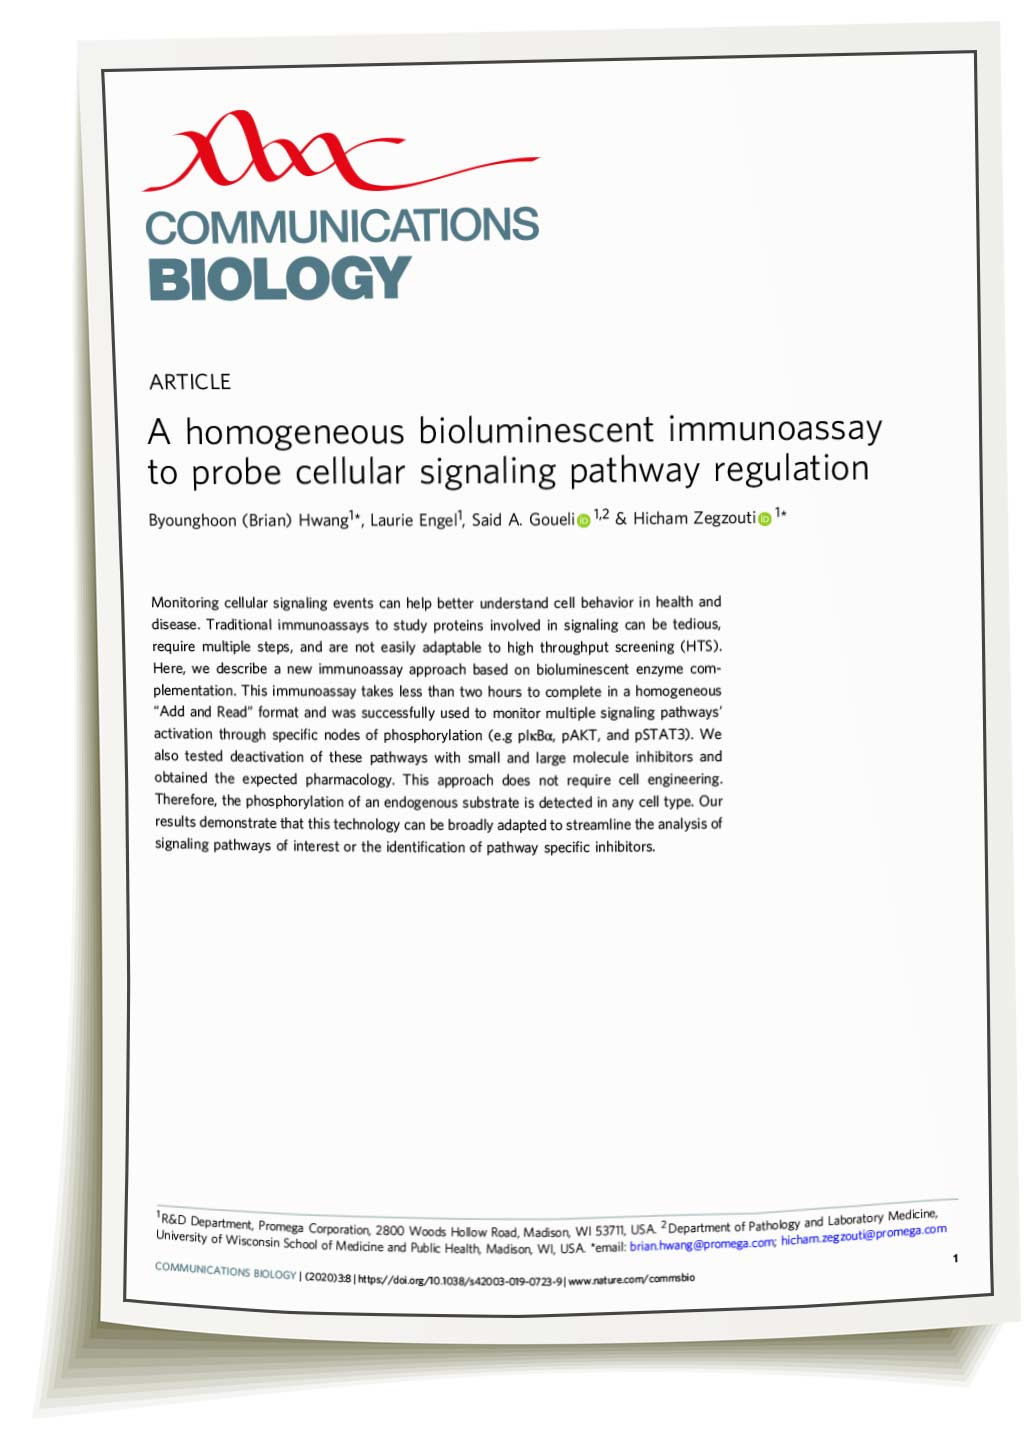 lumit-immunoassay-nature-communications-biology-paper